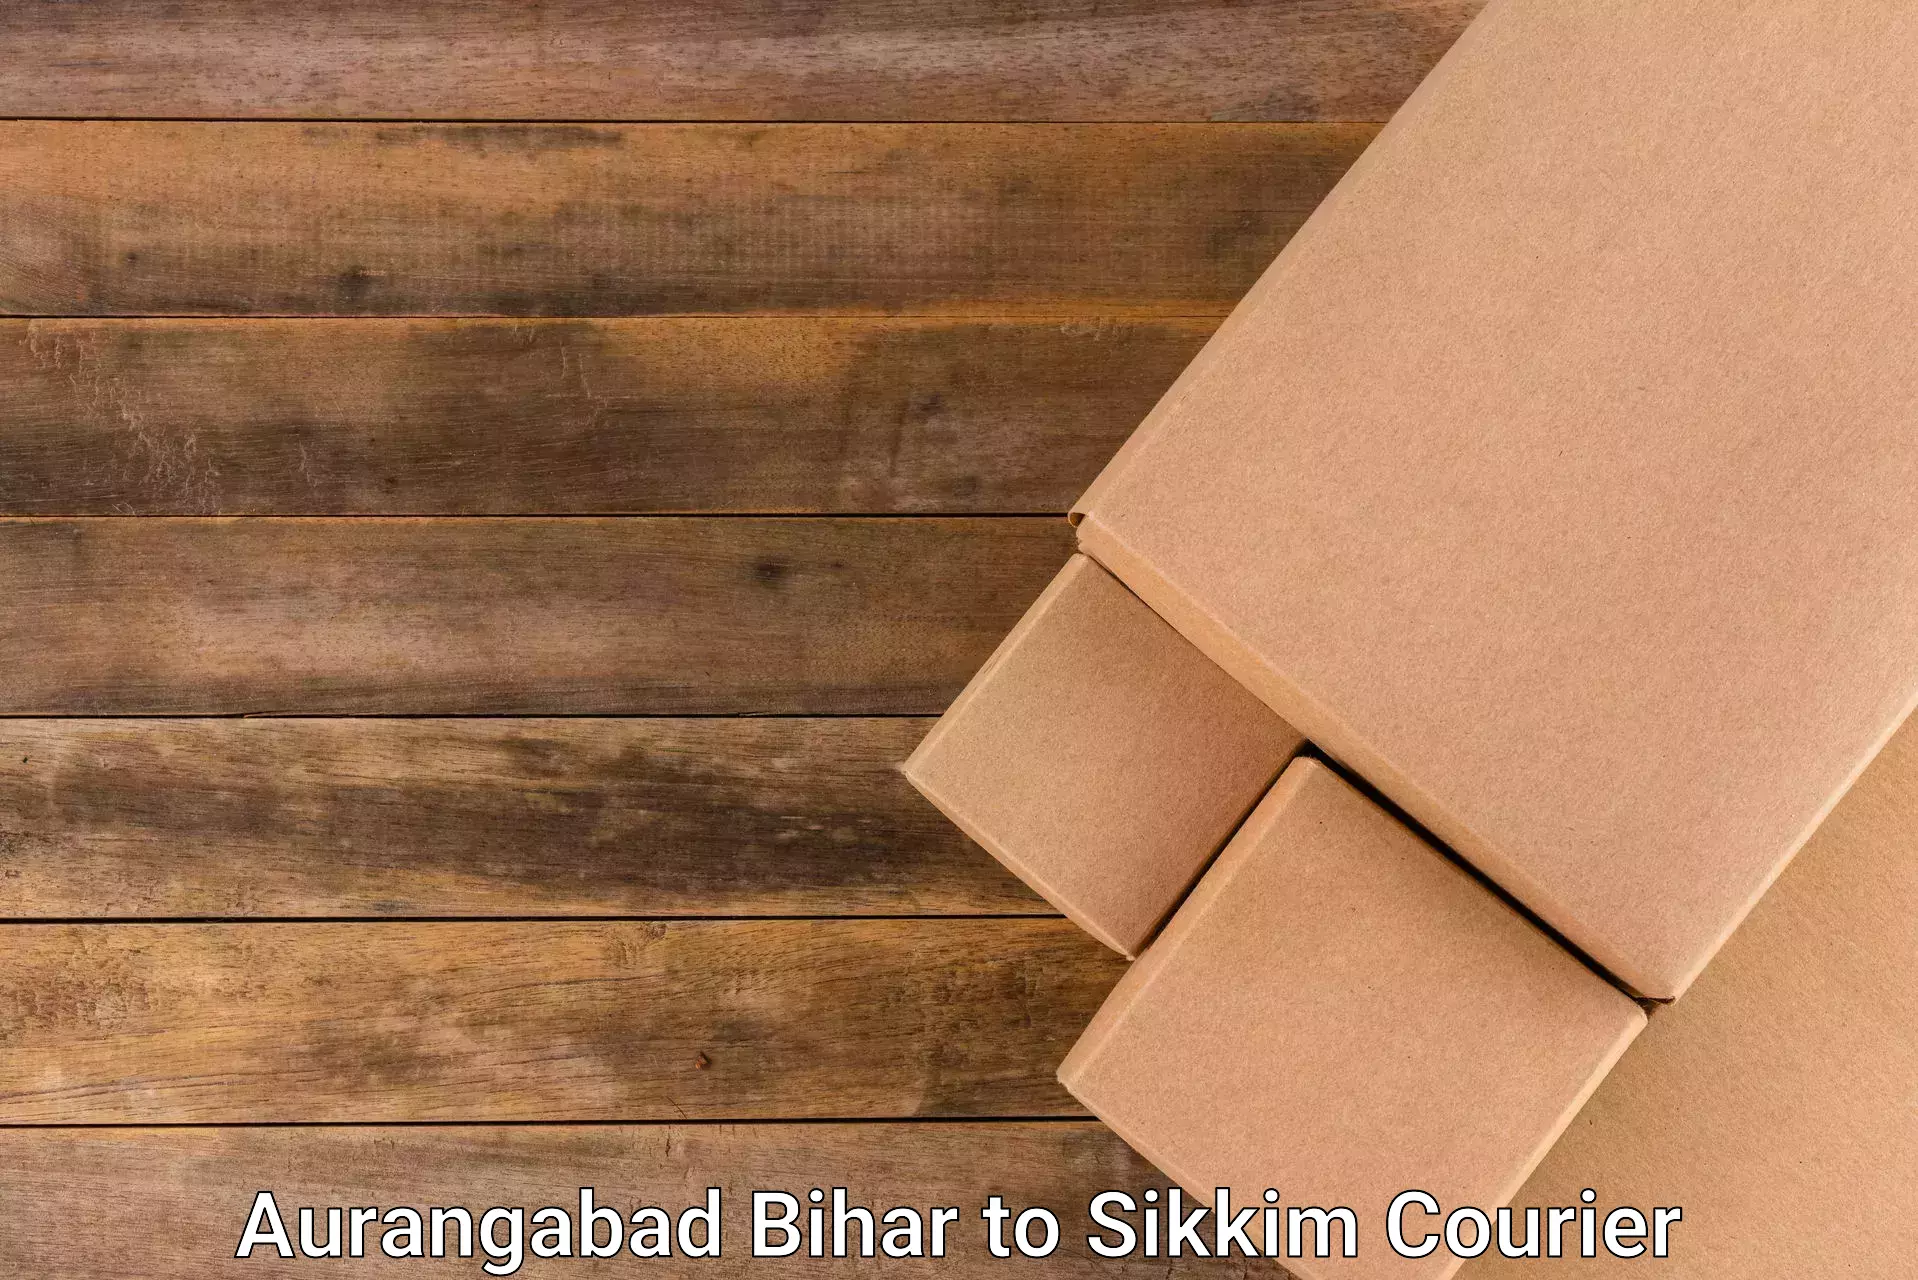 On-demand courier in Aurangabad Bihar to Geyzing